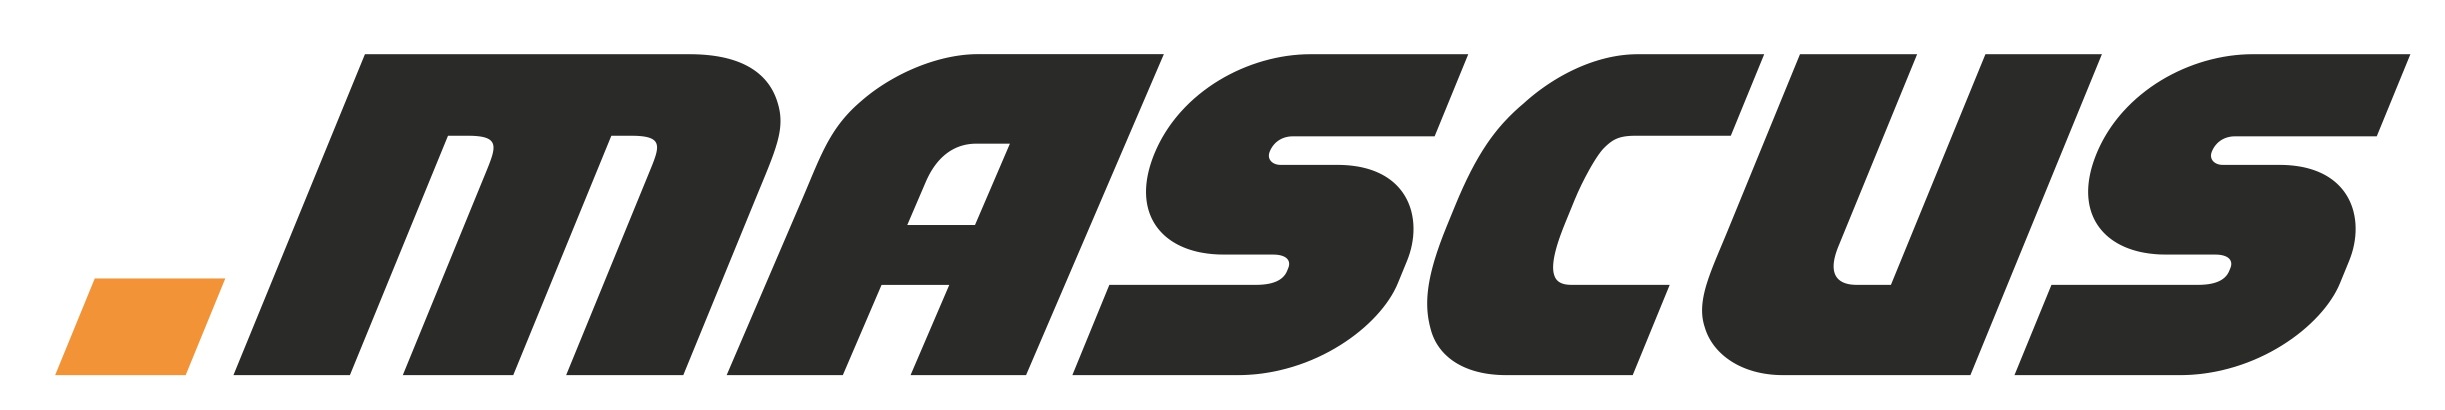 Mascus_logo